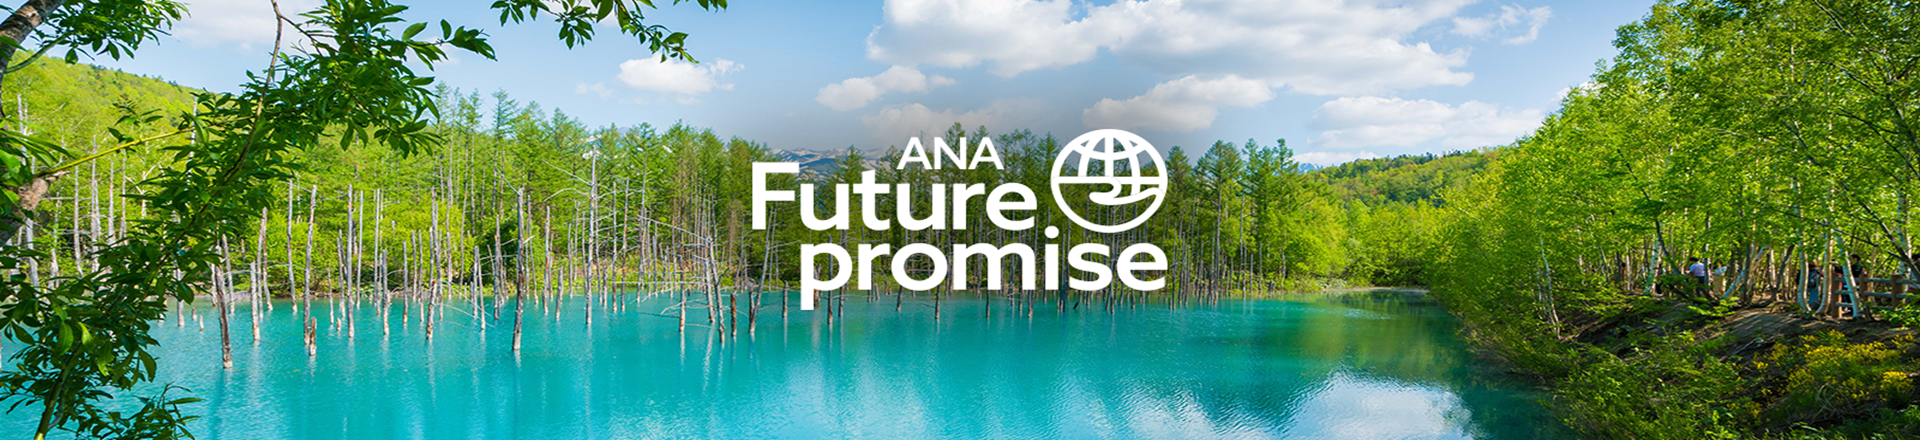 ANA Future Promise 